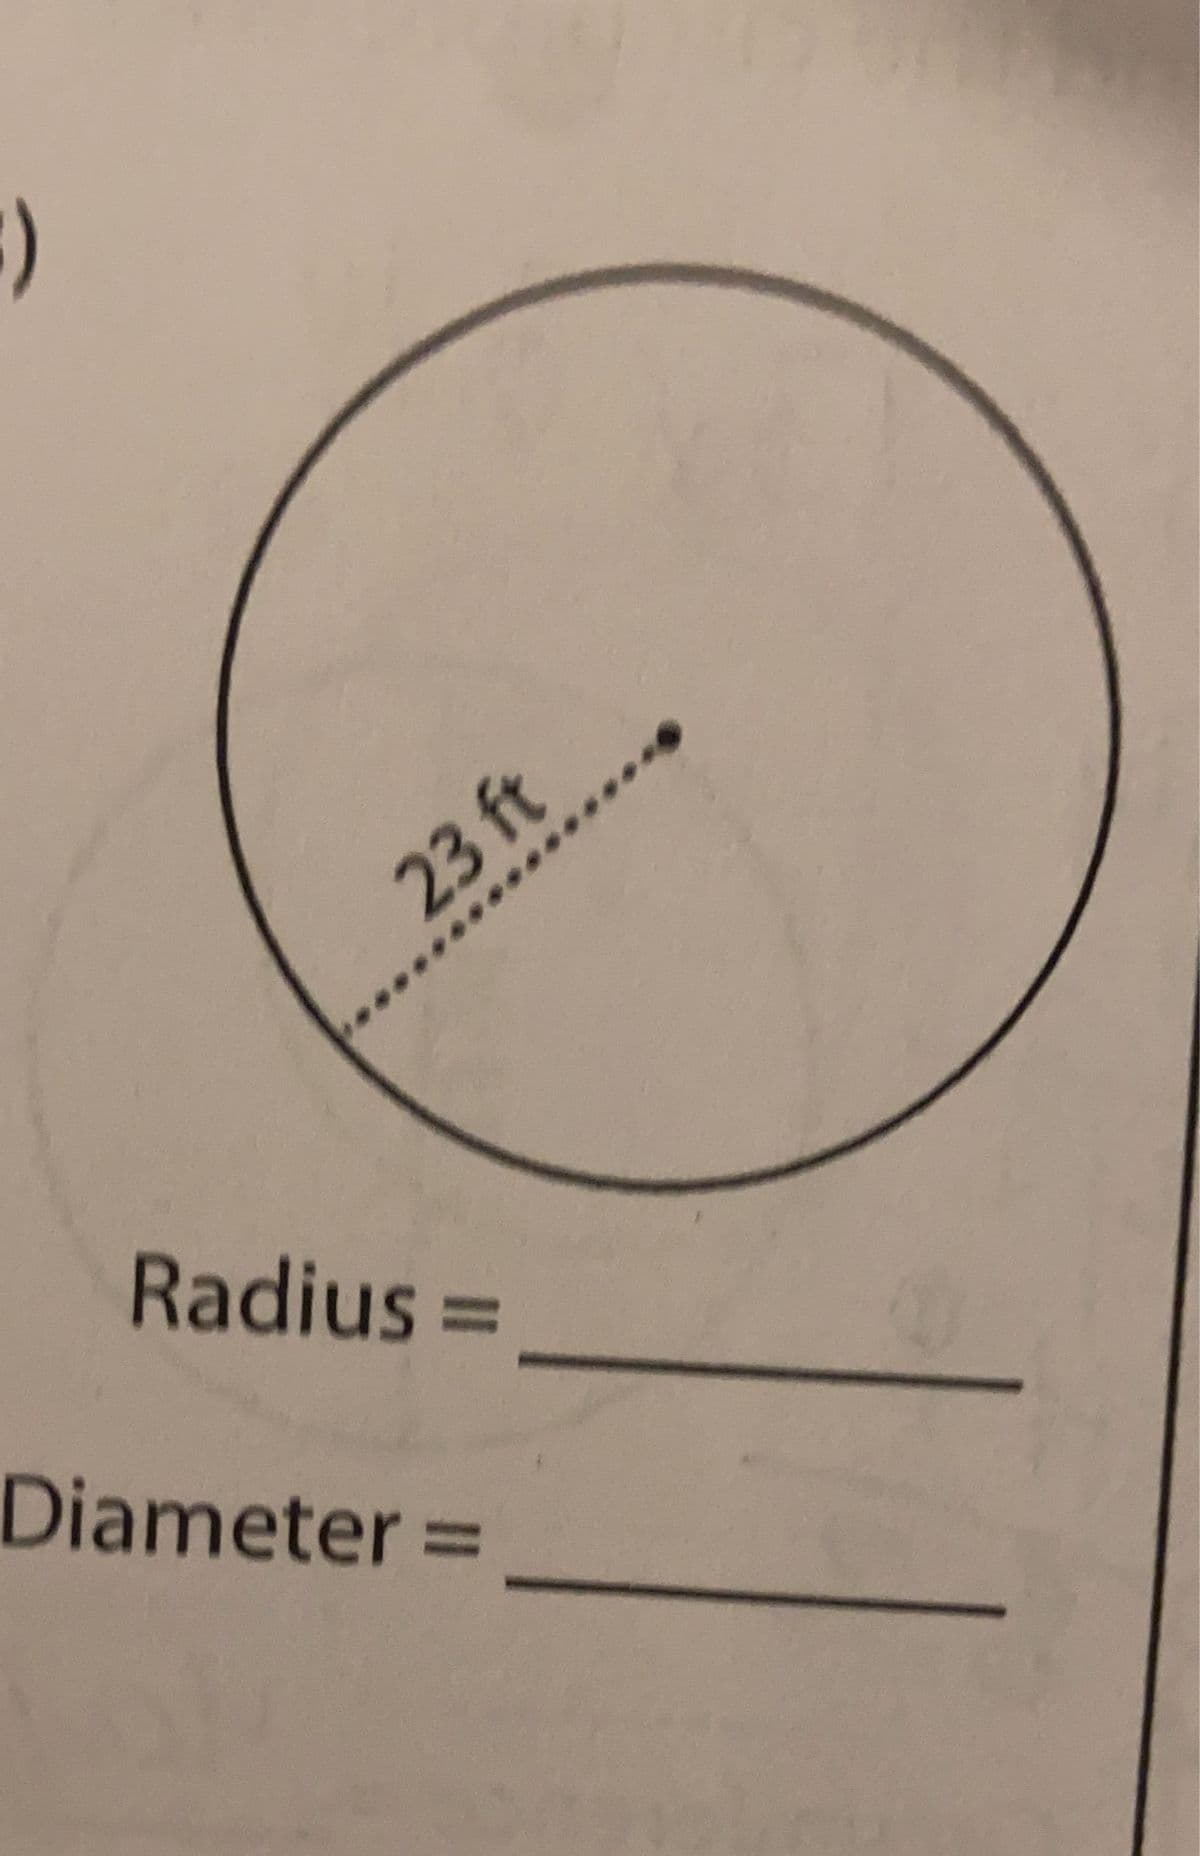 )
23 ft
Radius 3D
Diameter =
